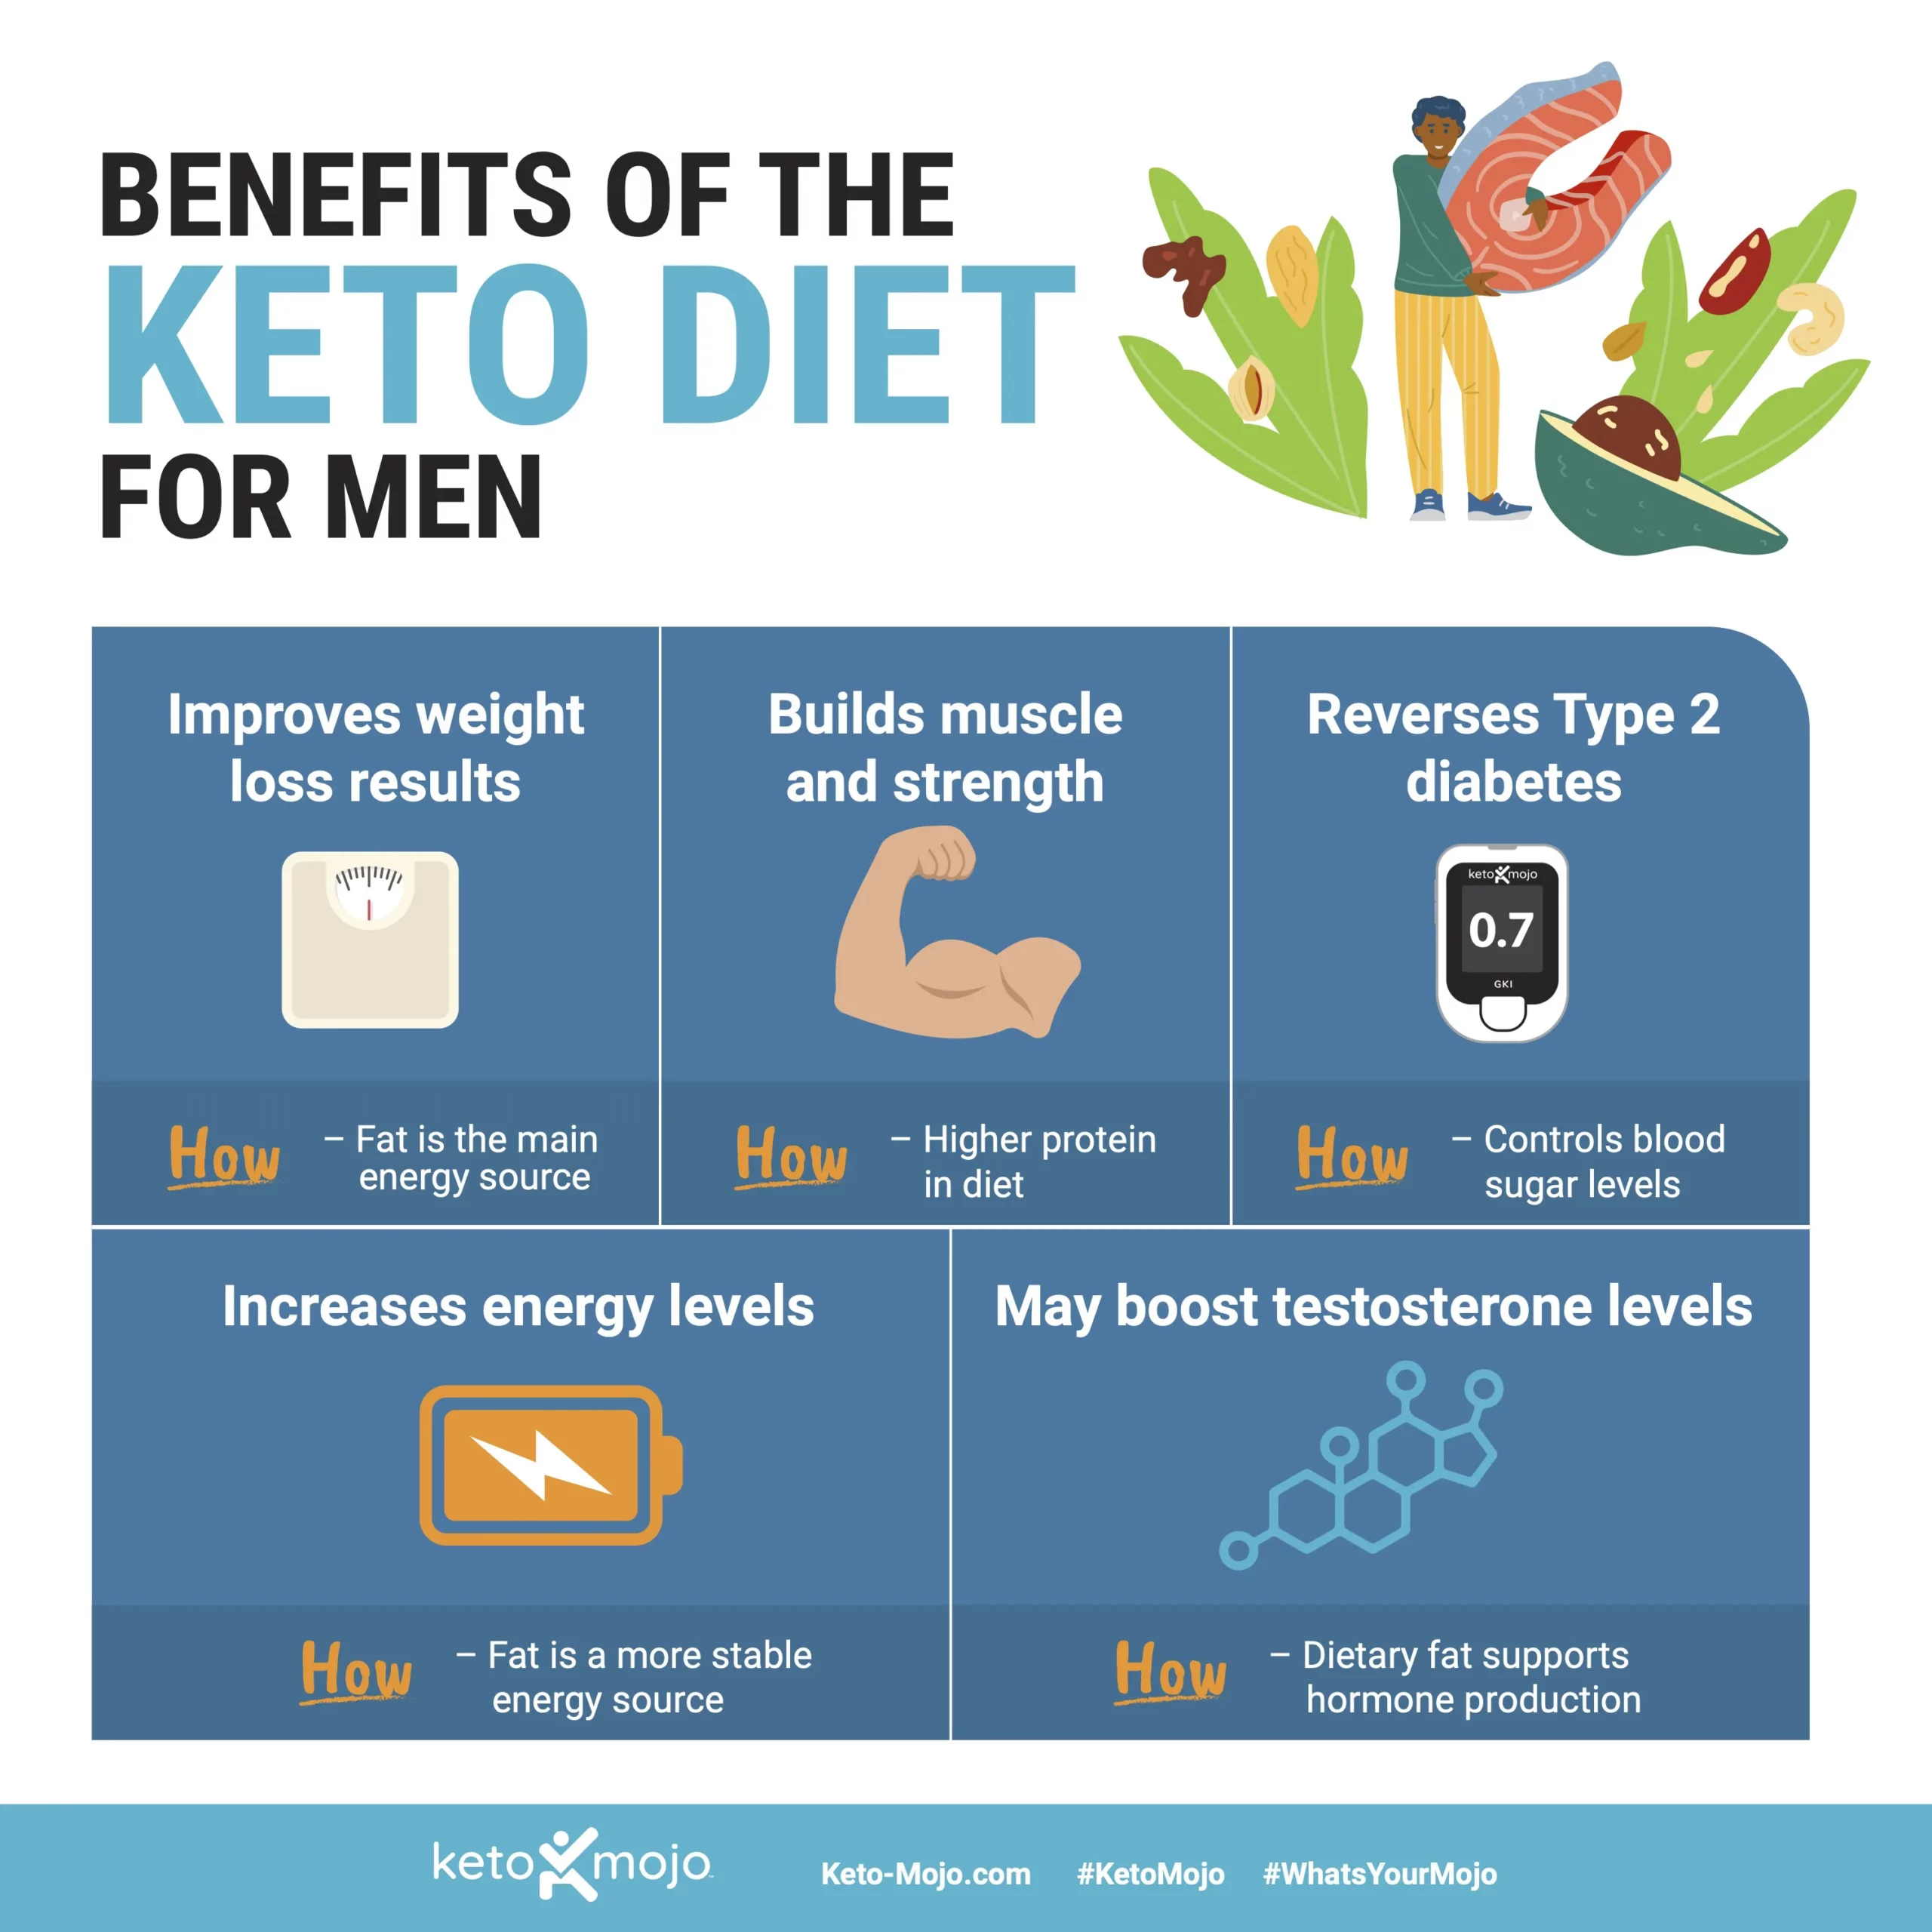 Keto Diet for Men